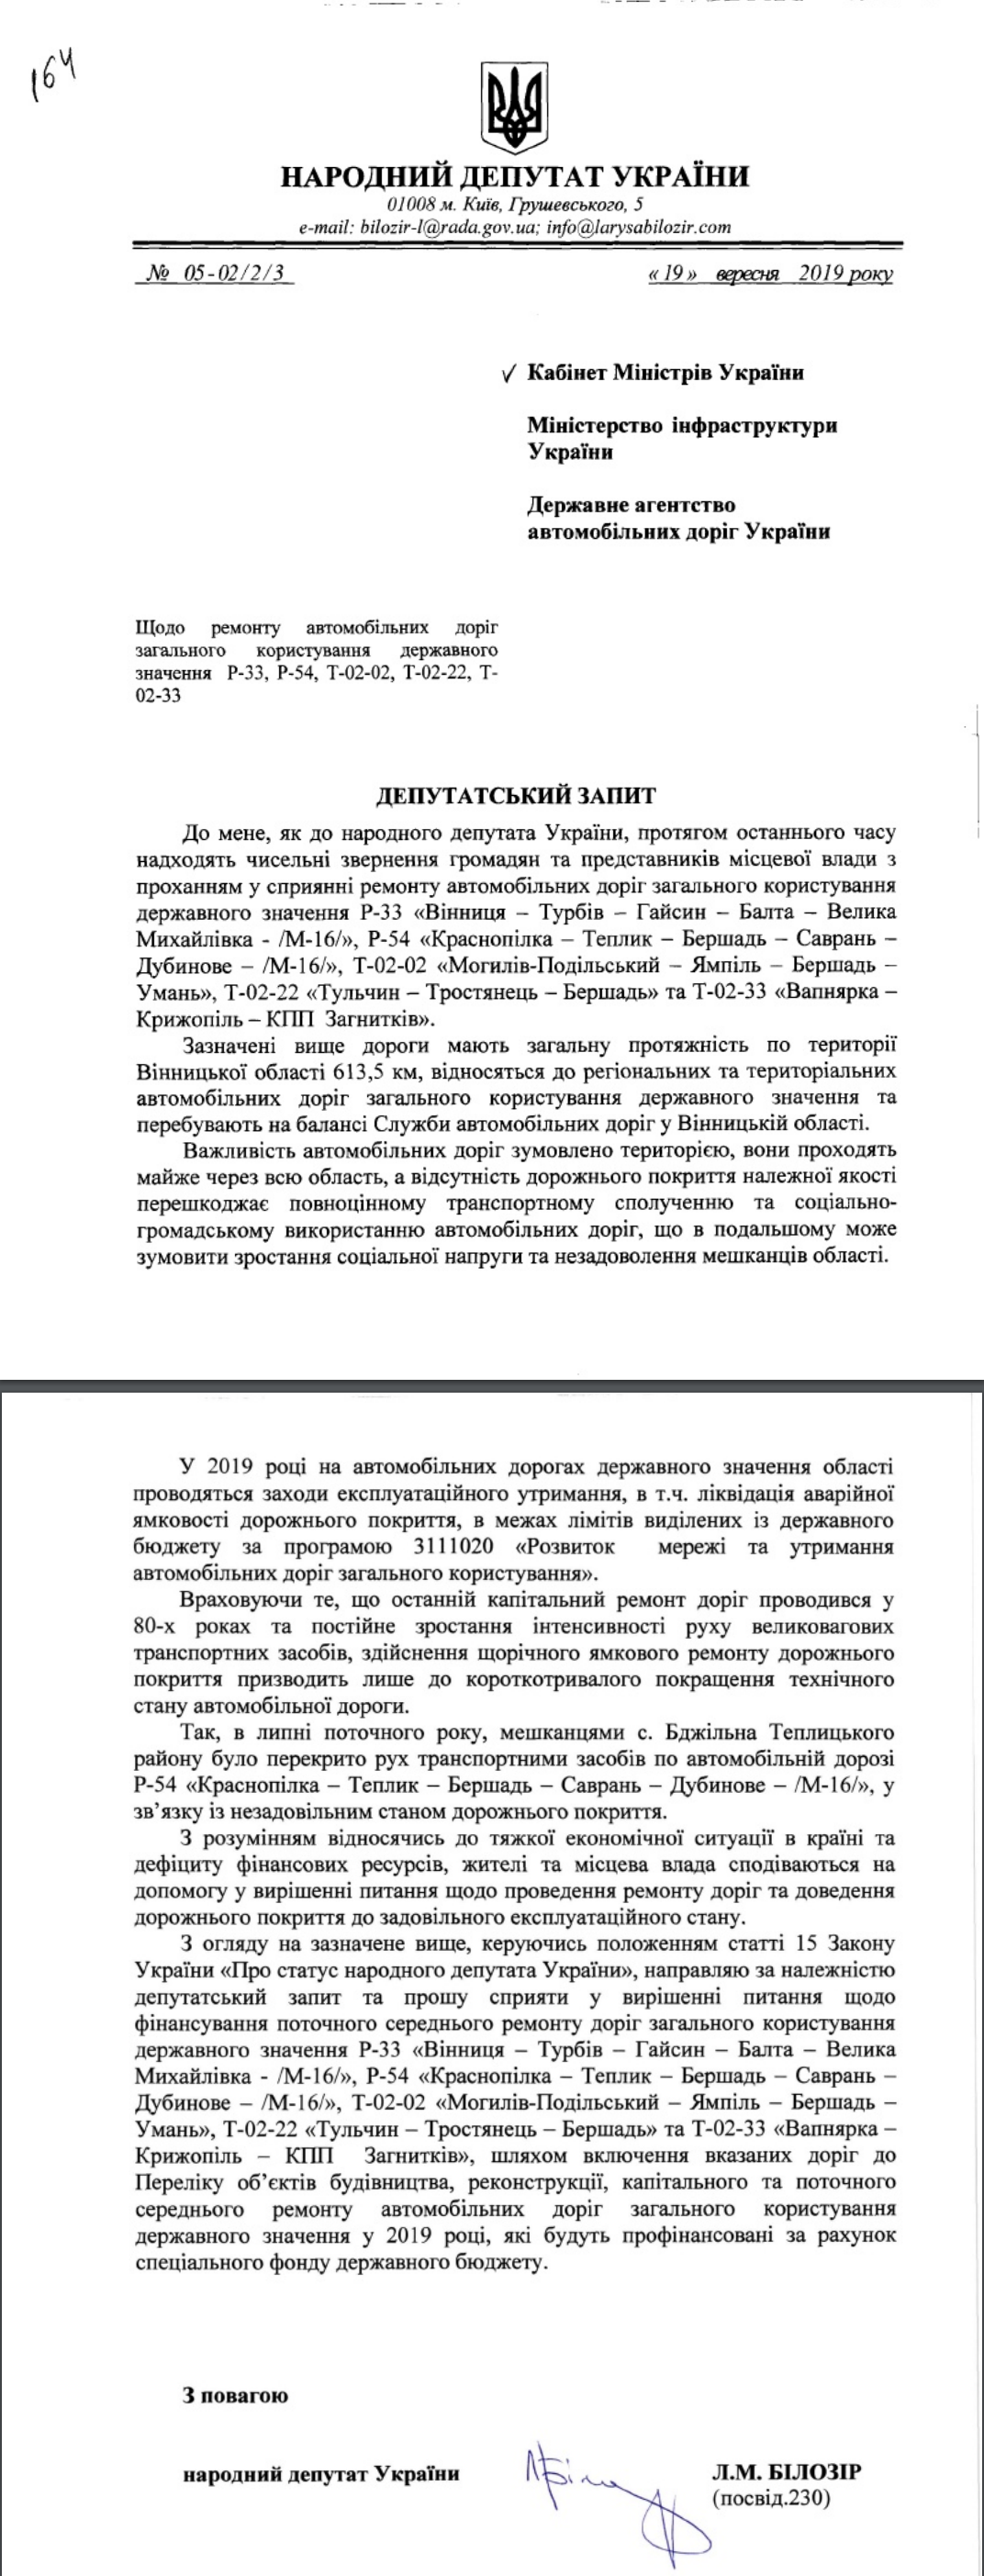 http://w1.c1.rada.gov.ua/pls/zweb2/wcadr_document?DOCUMENT_ID=187106&DOCUMENT_TYPE=1